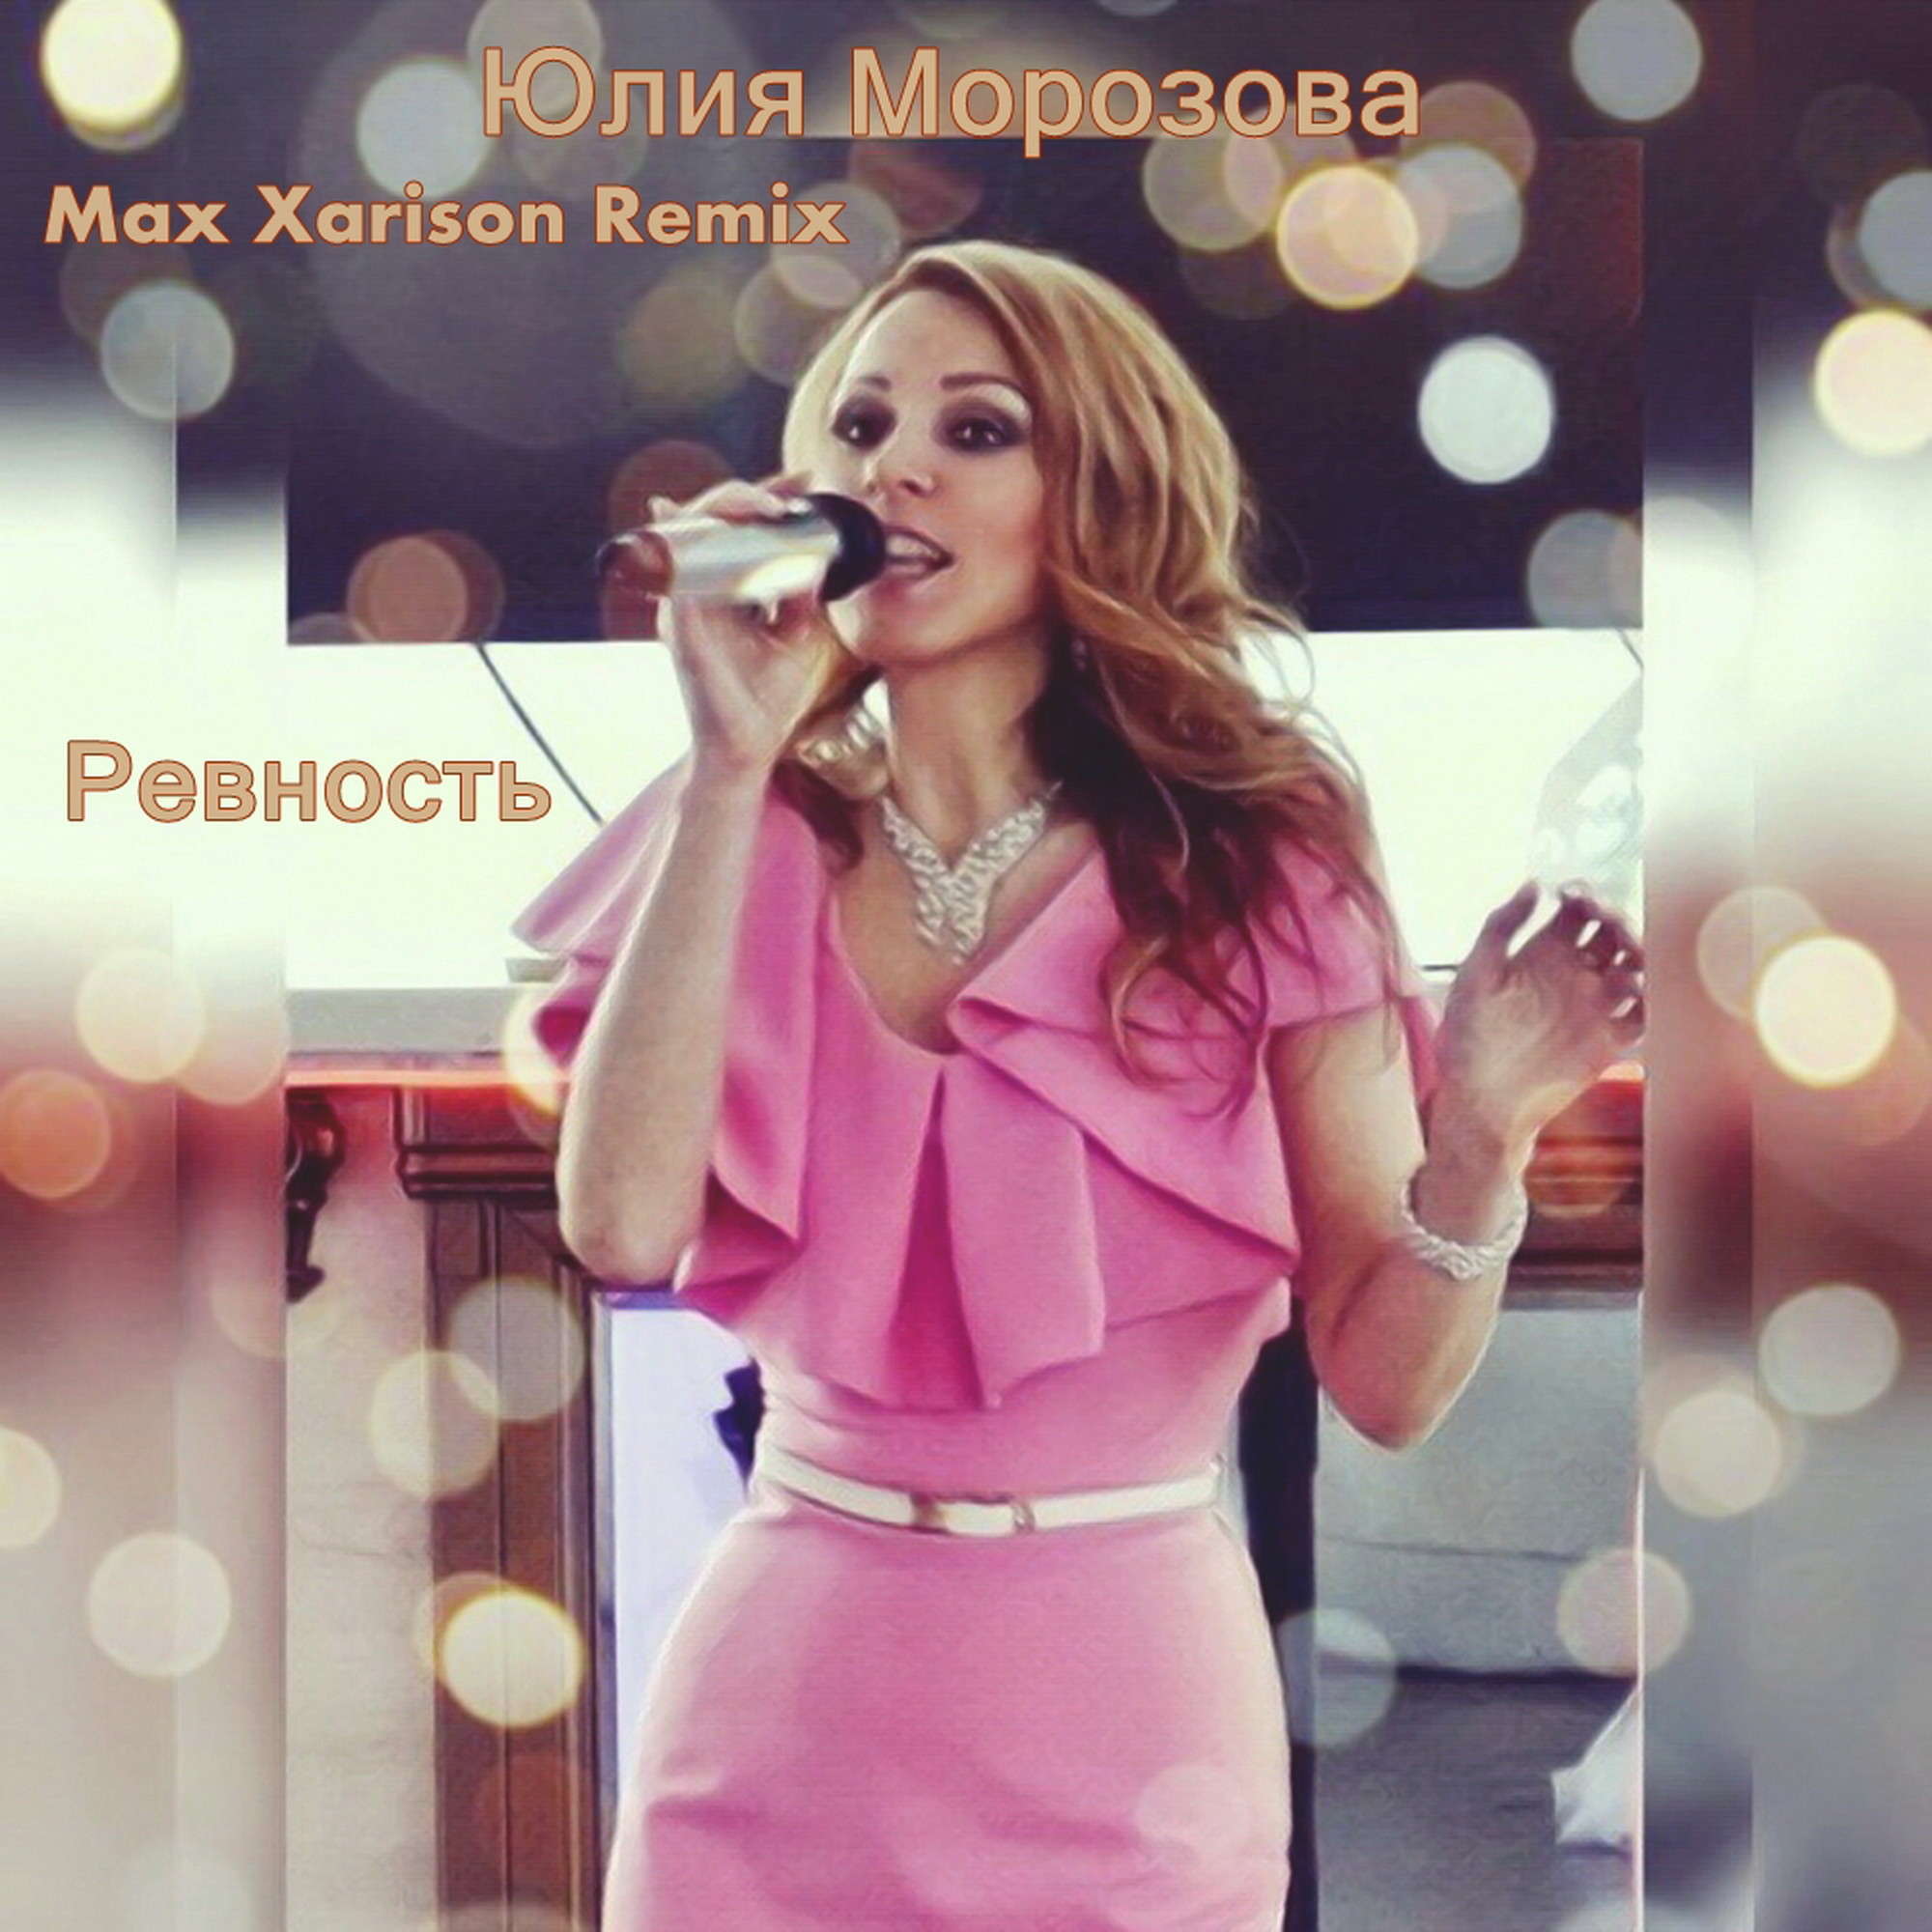 Русский стиль песни не ревнуй. Ревную ремикс. Фото певицы Юлии Морозовой.